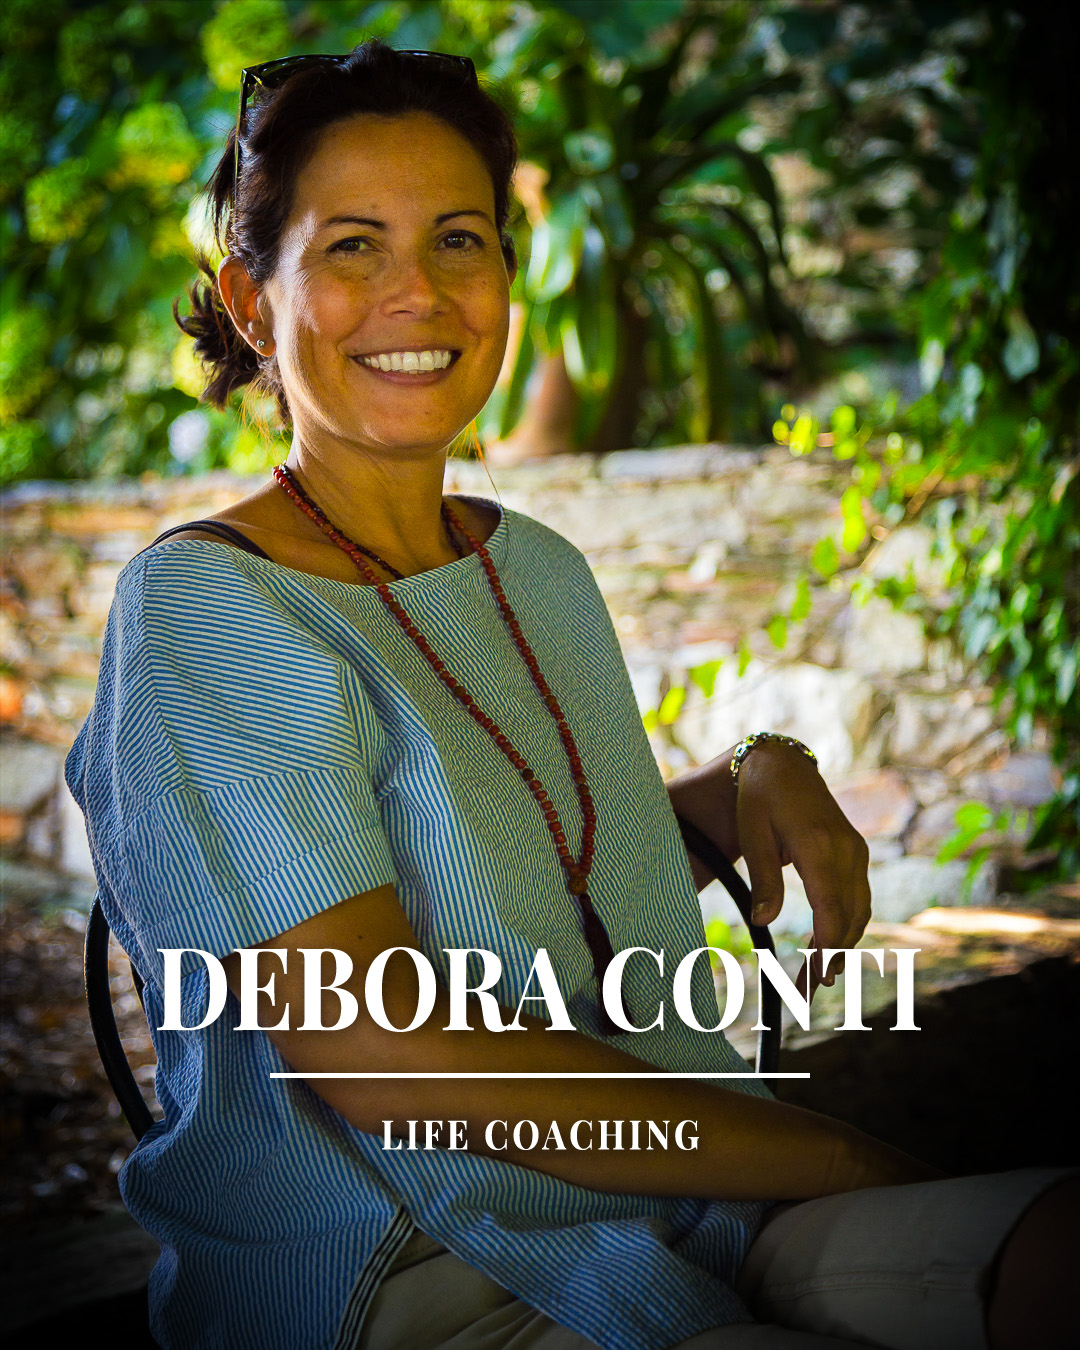 Corsi live online con Debora Conti.  Vent'anni di esperienza di coaching per la tua crescita.